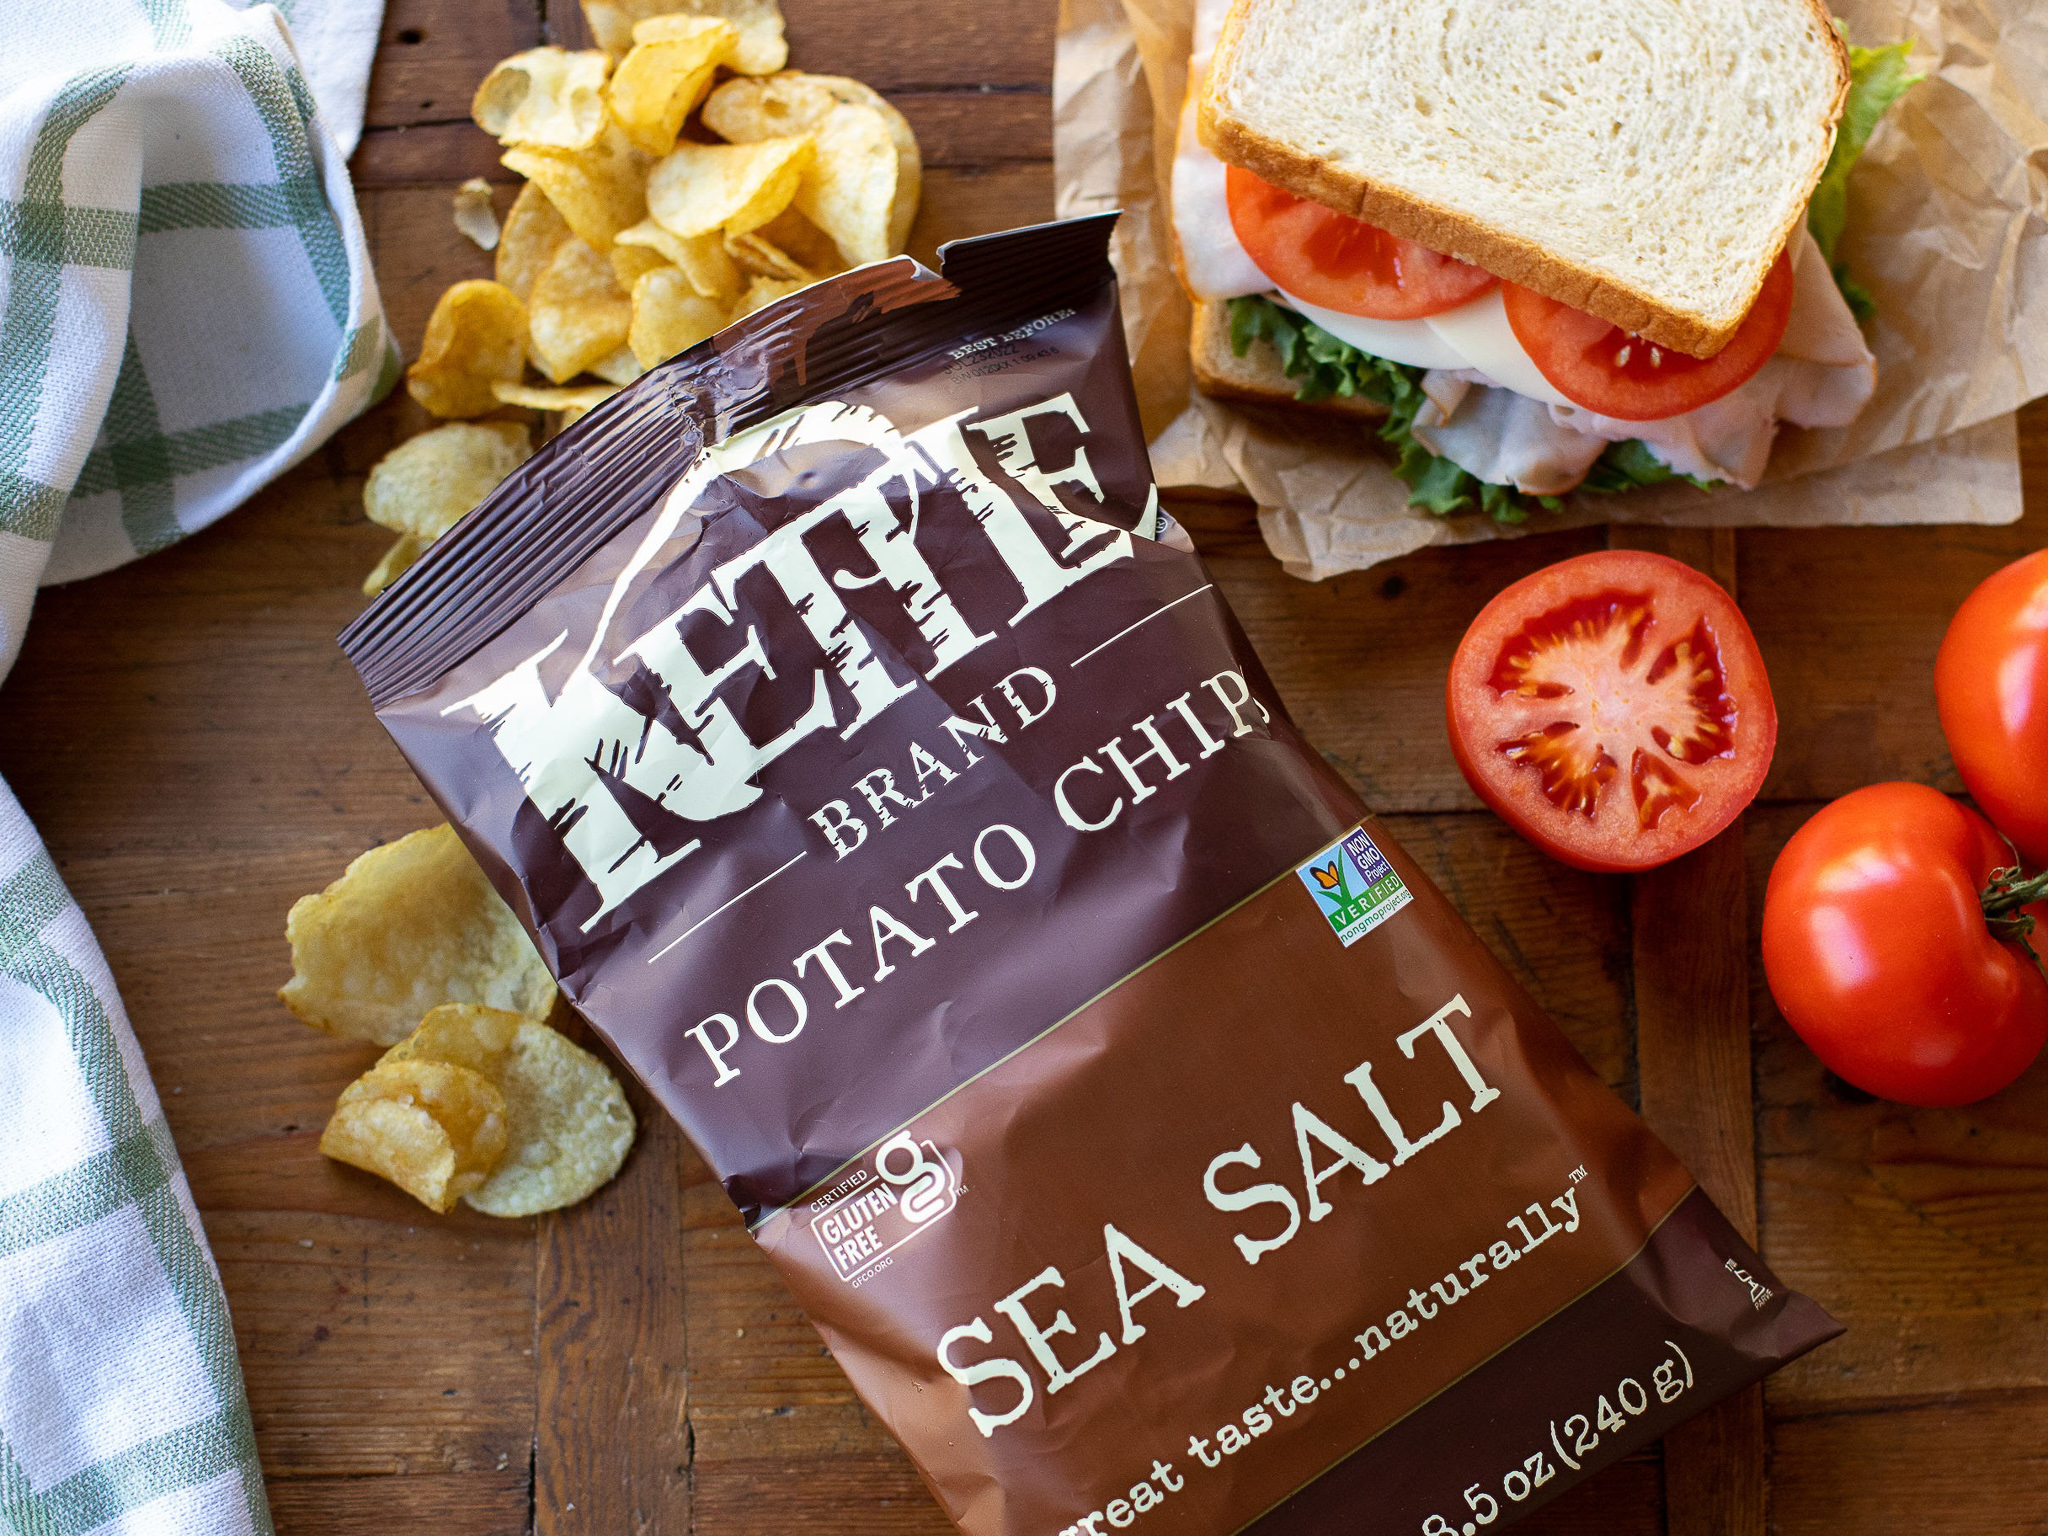 Get Kettle Brand Chips For Just $1.77 At Kroger